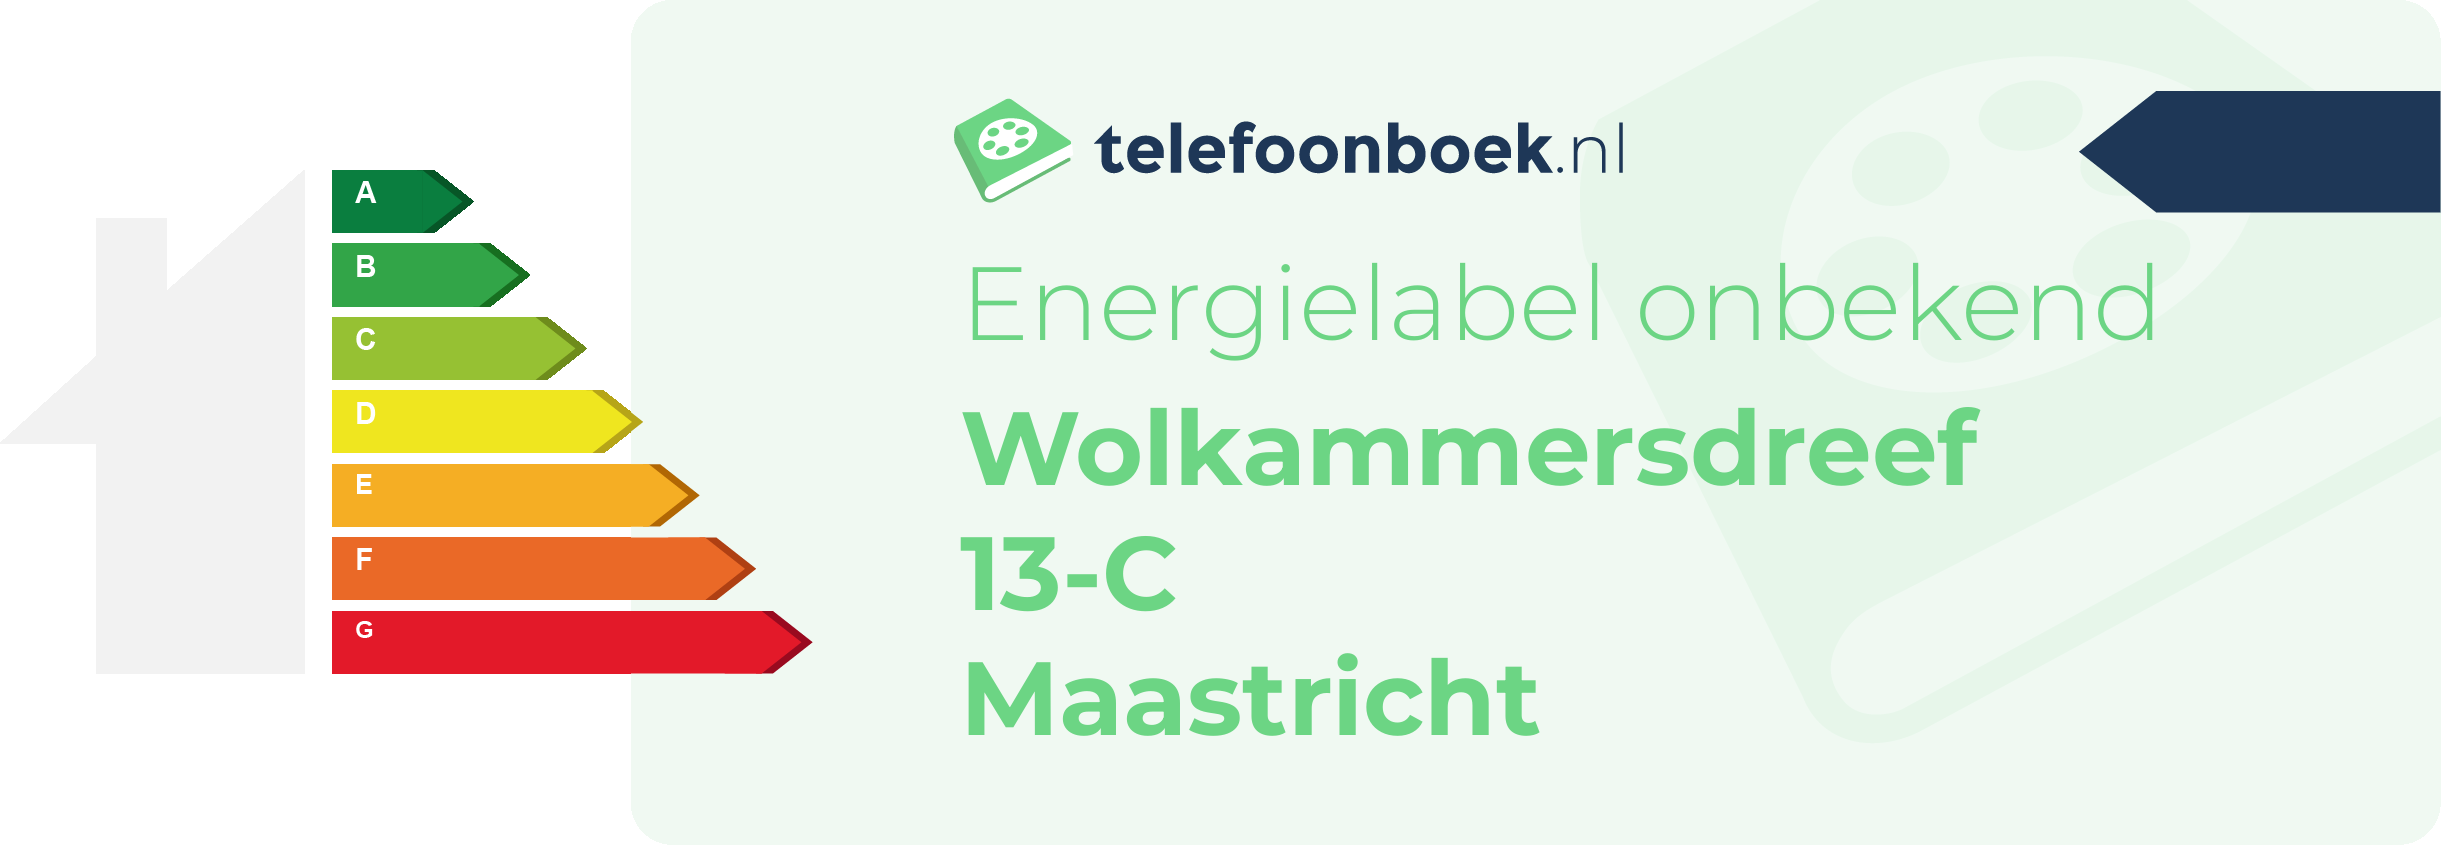 Energielabel Wolkammersdreef 13-C Maastricht